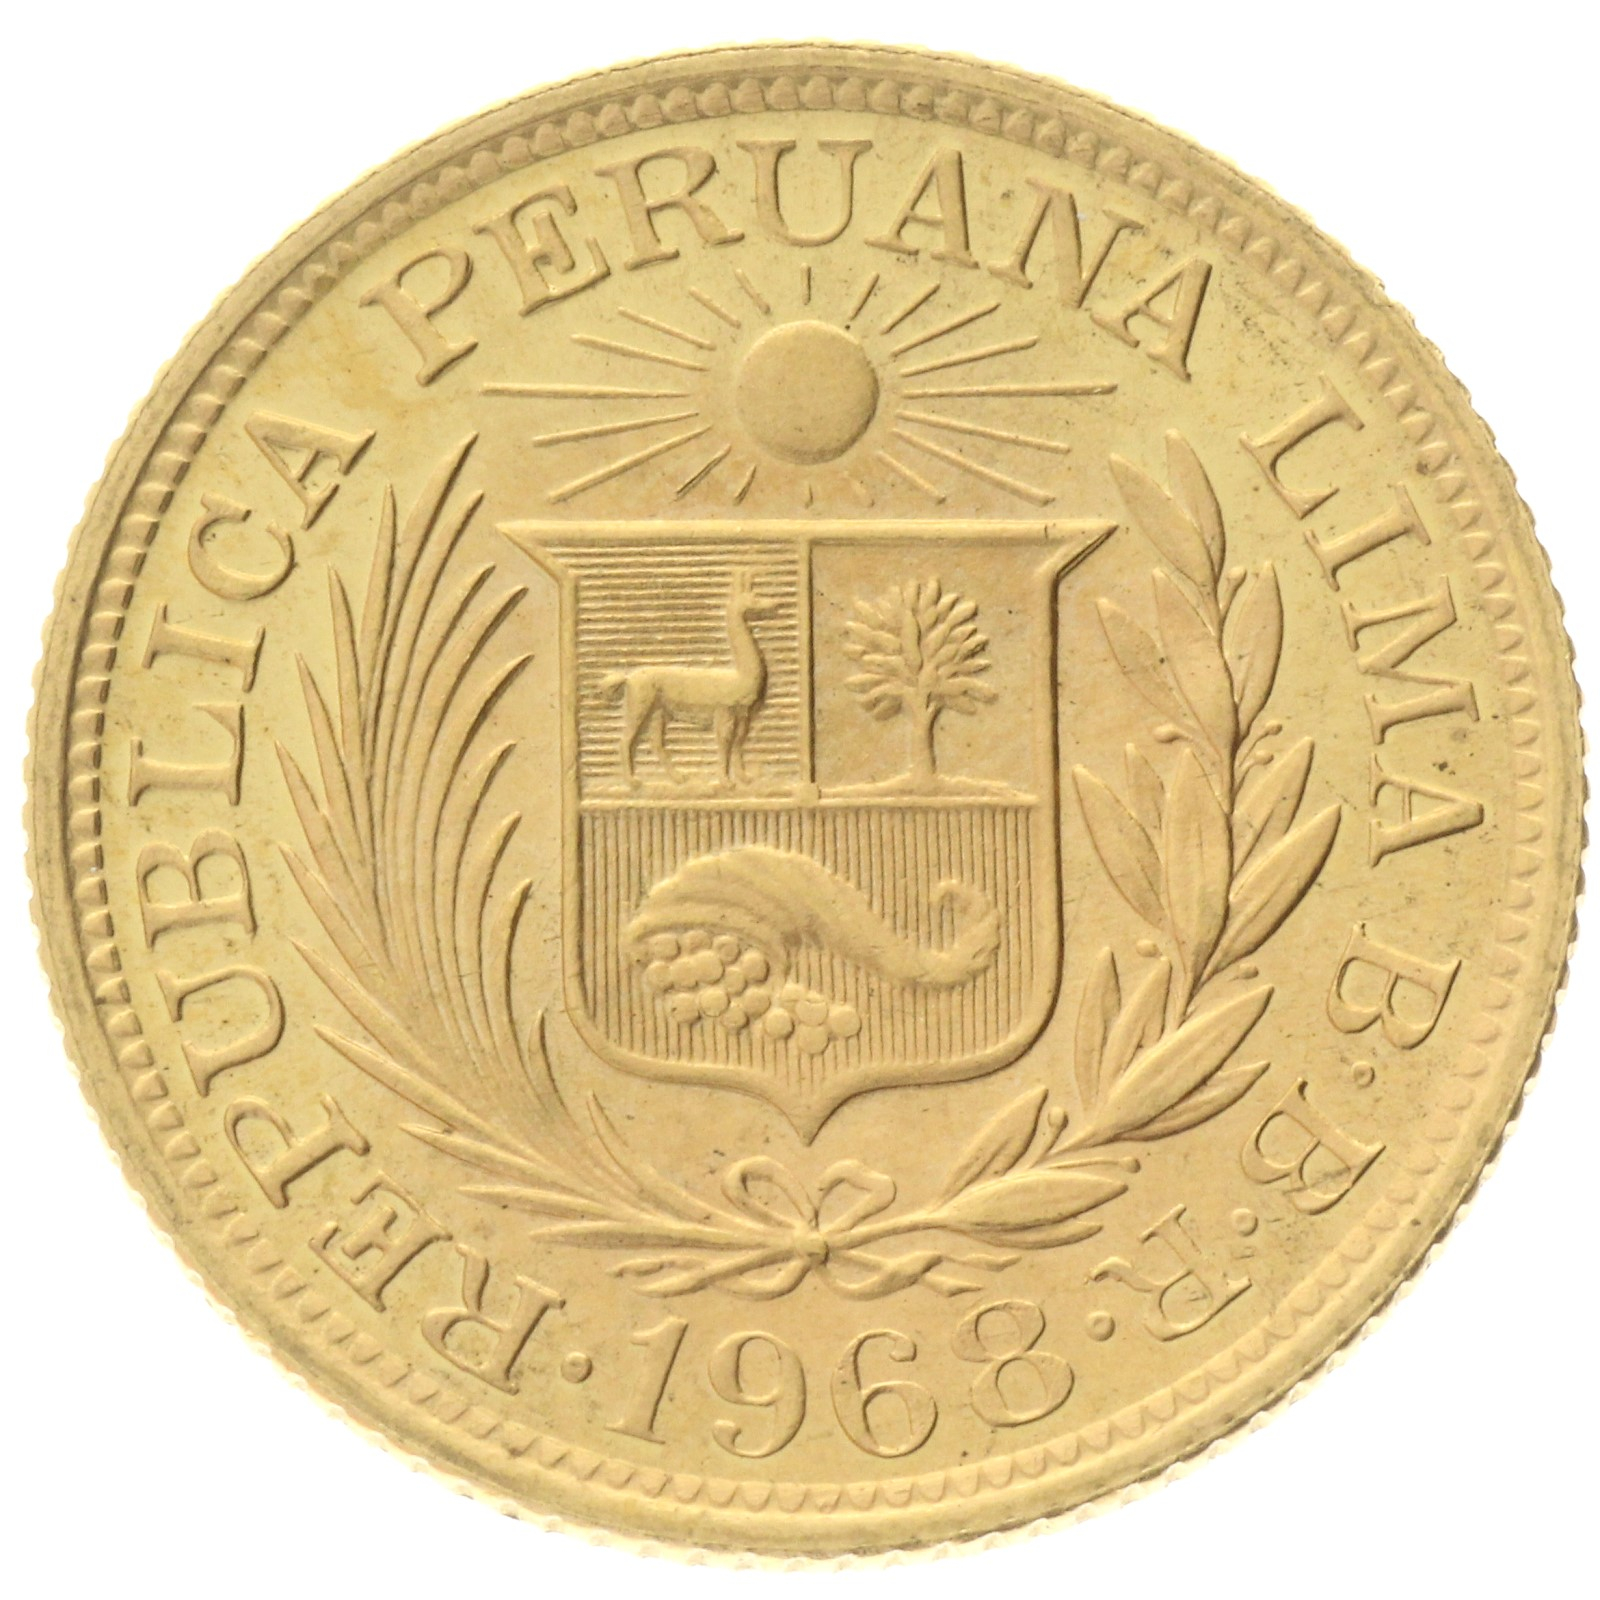 Peru - 1 libra - 1968